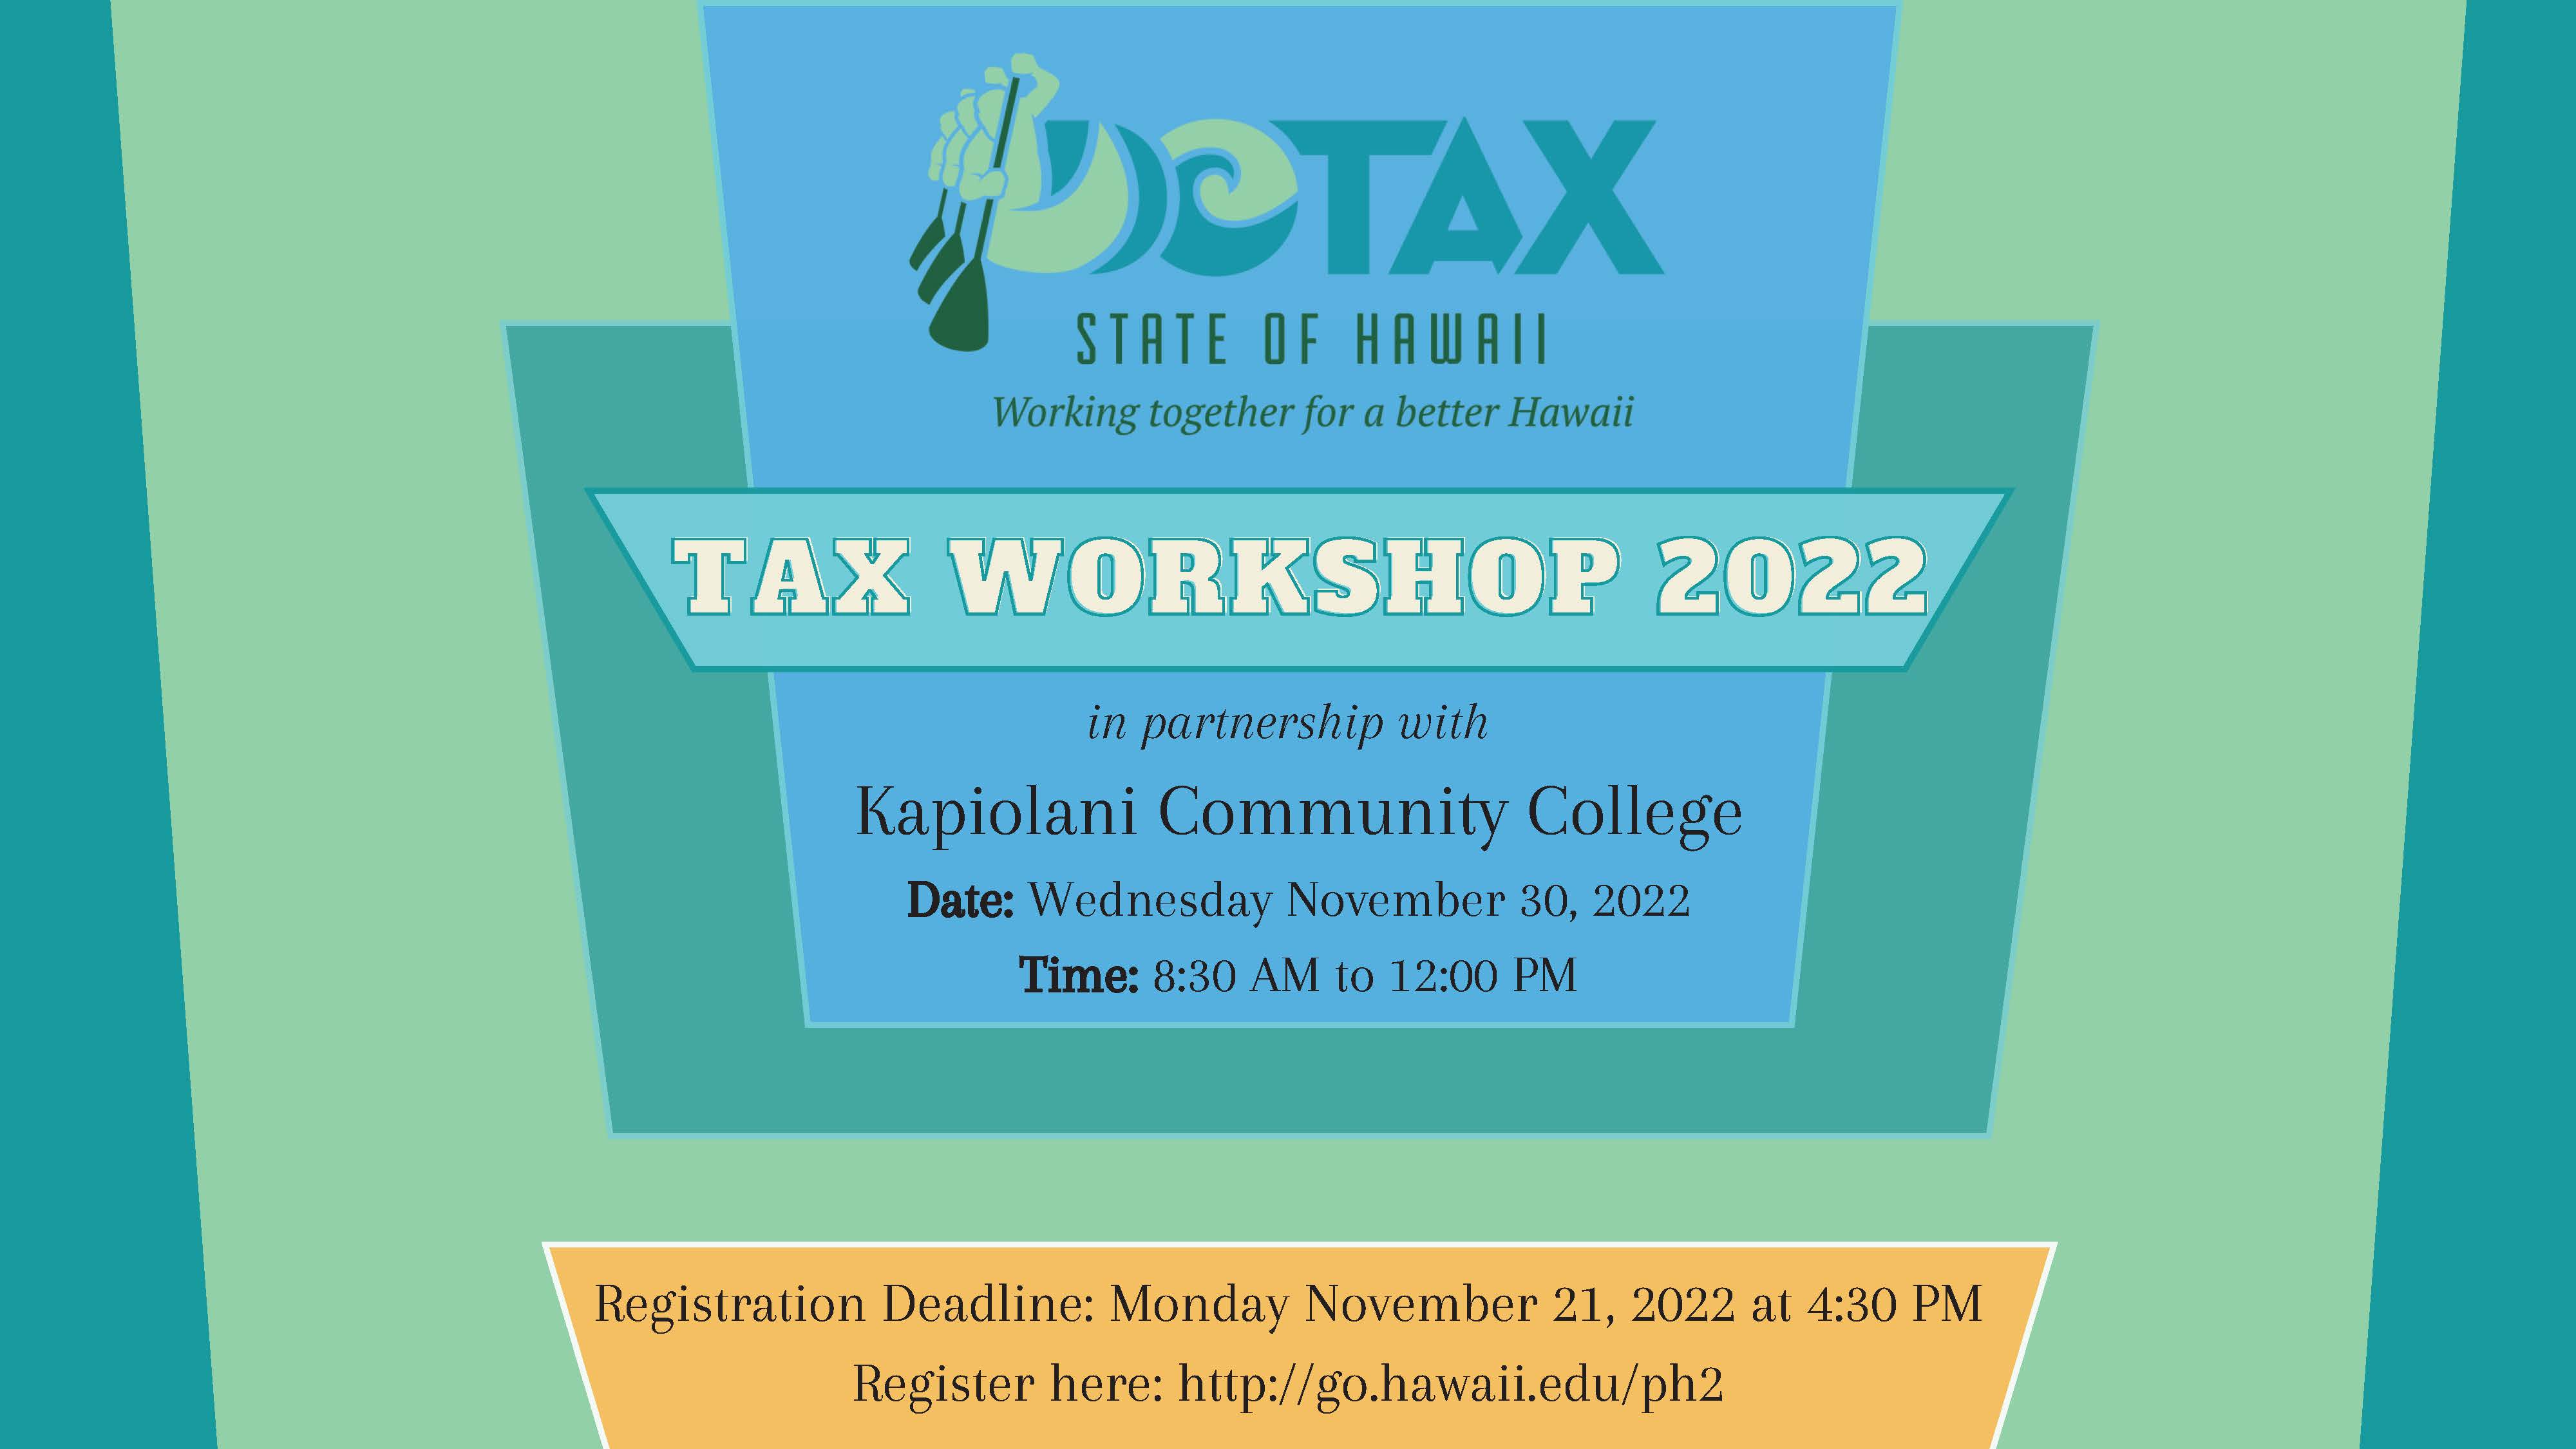 2022 Tax workshop, November 30, 2022, Registration deadline: November 21, 2022 at 4:30 PM